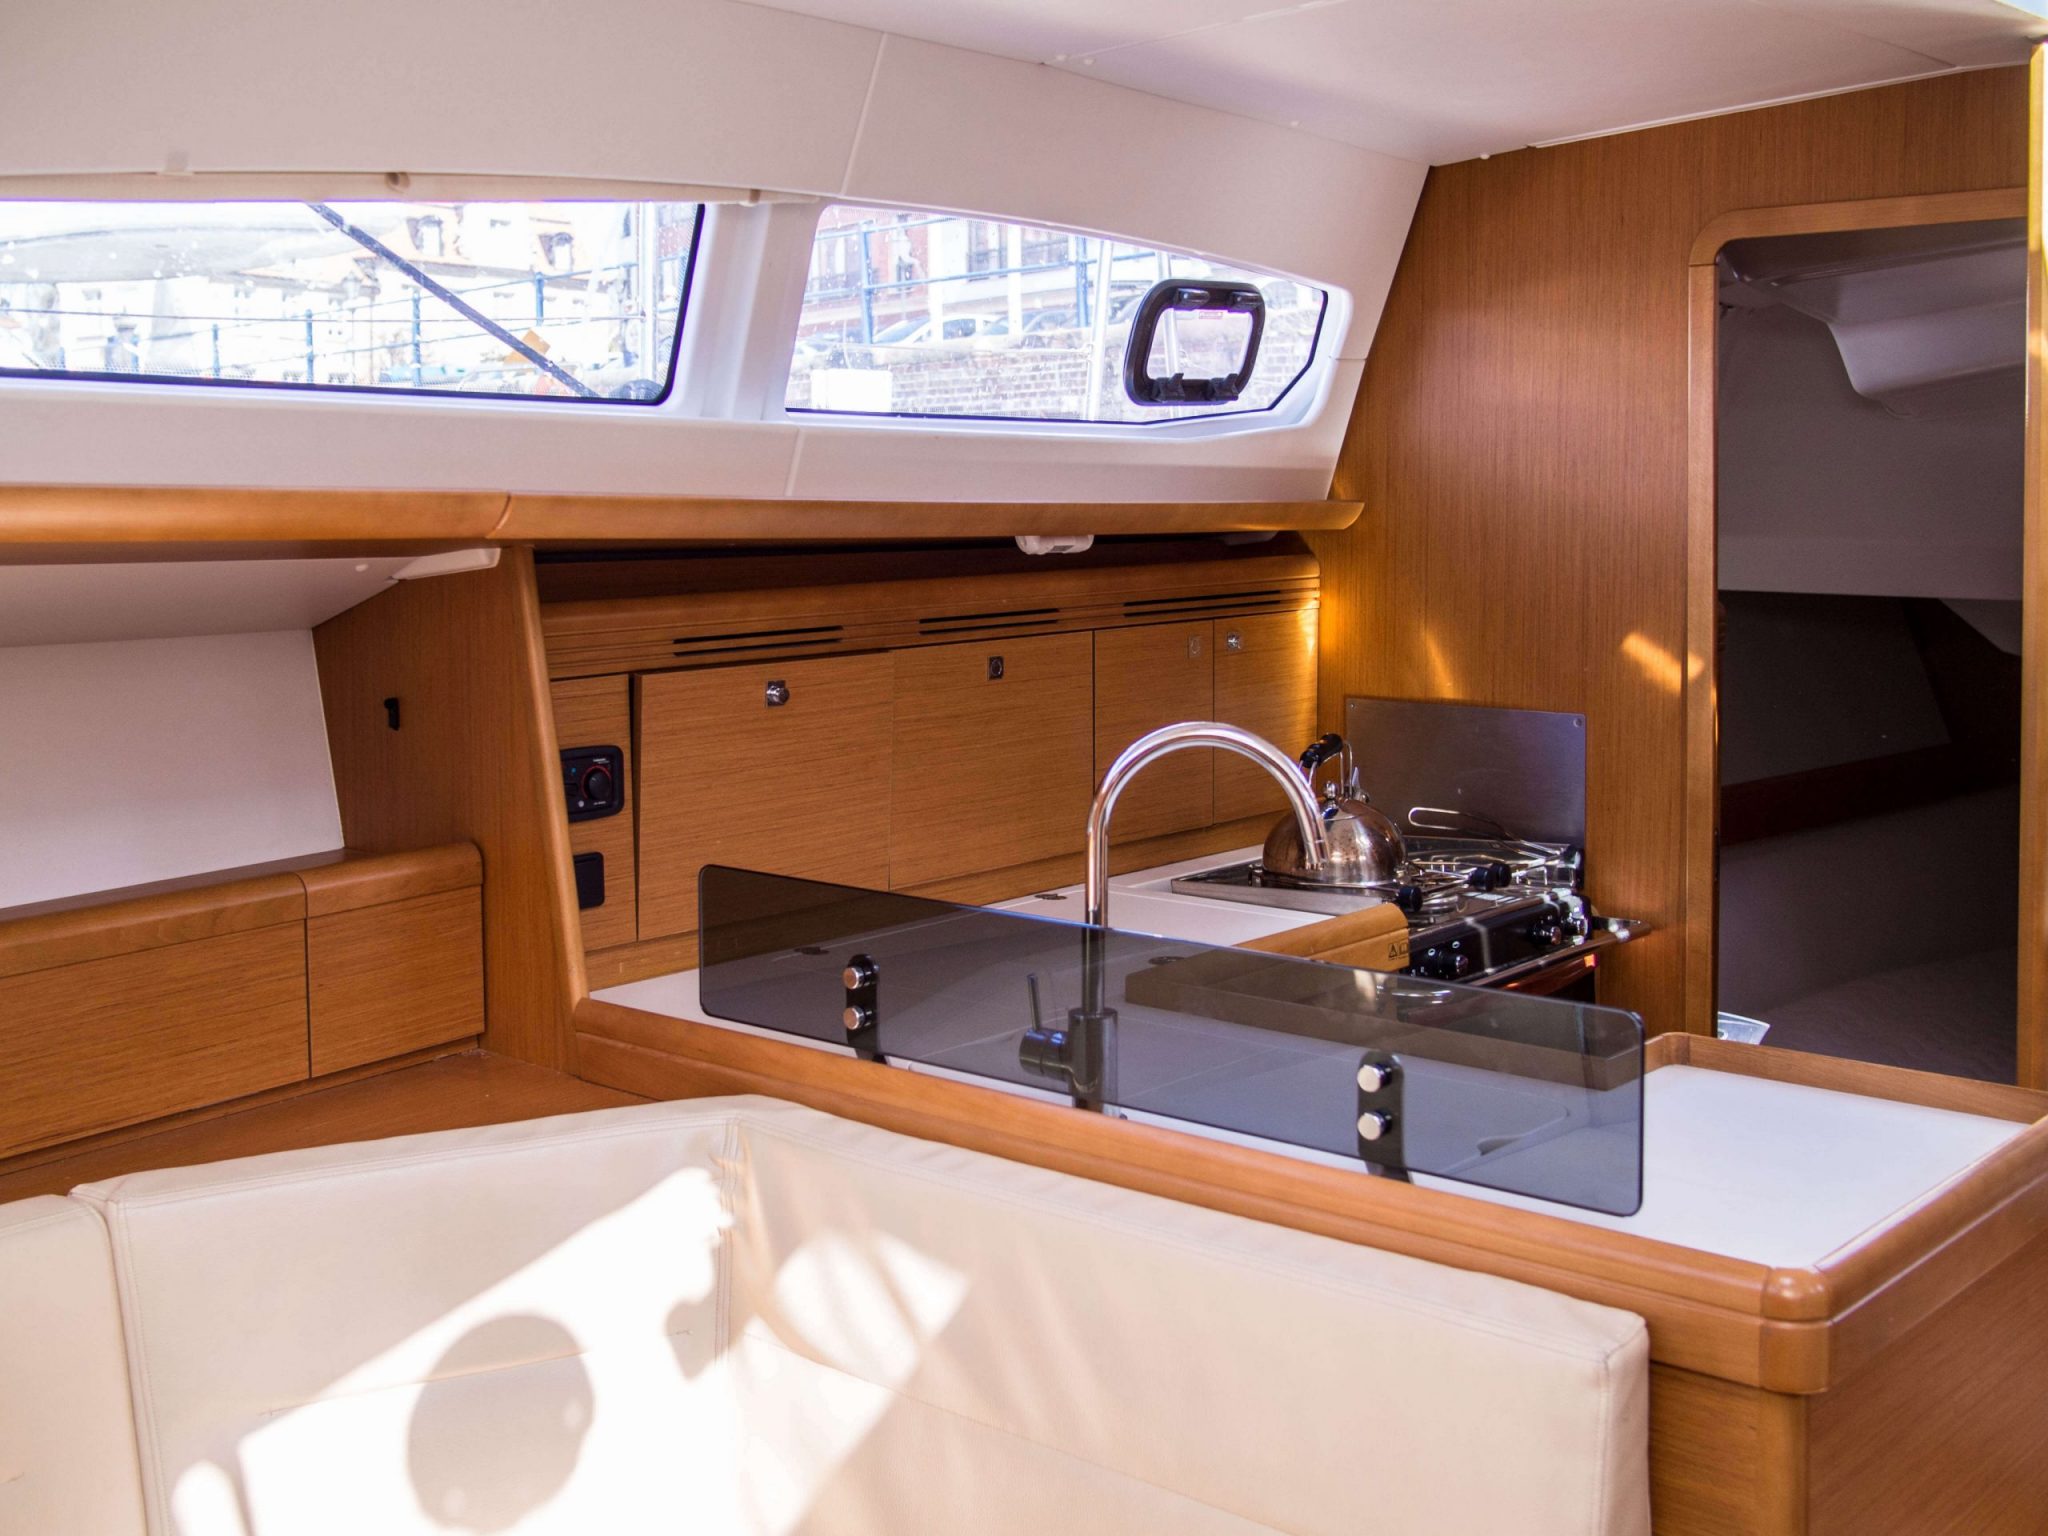 Volvo Gdynia Sailing Days6 wodne atrakcje 18 scaled - Pomorskie z wody